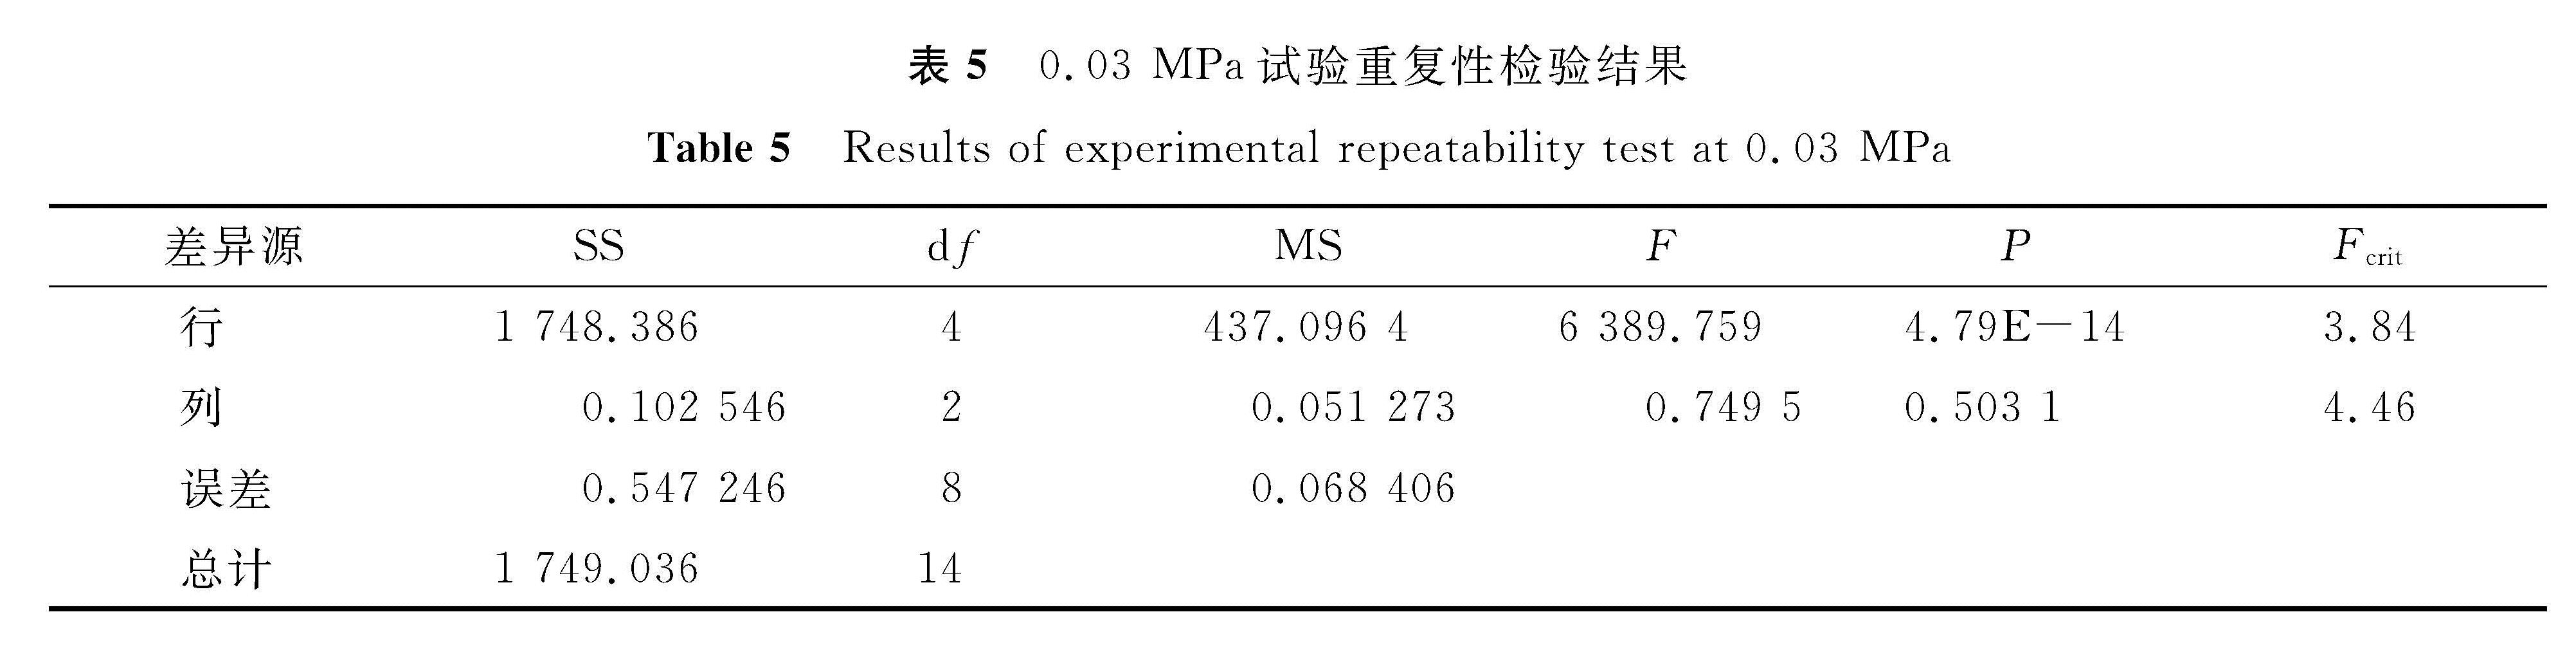 表5 0.03 MPa试验重复性检验结果<br/>Table 5 Results of experimental repeatability test at 0.03 MPa